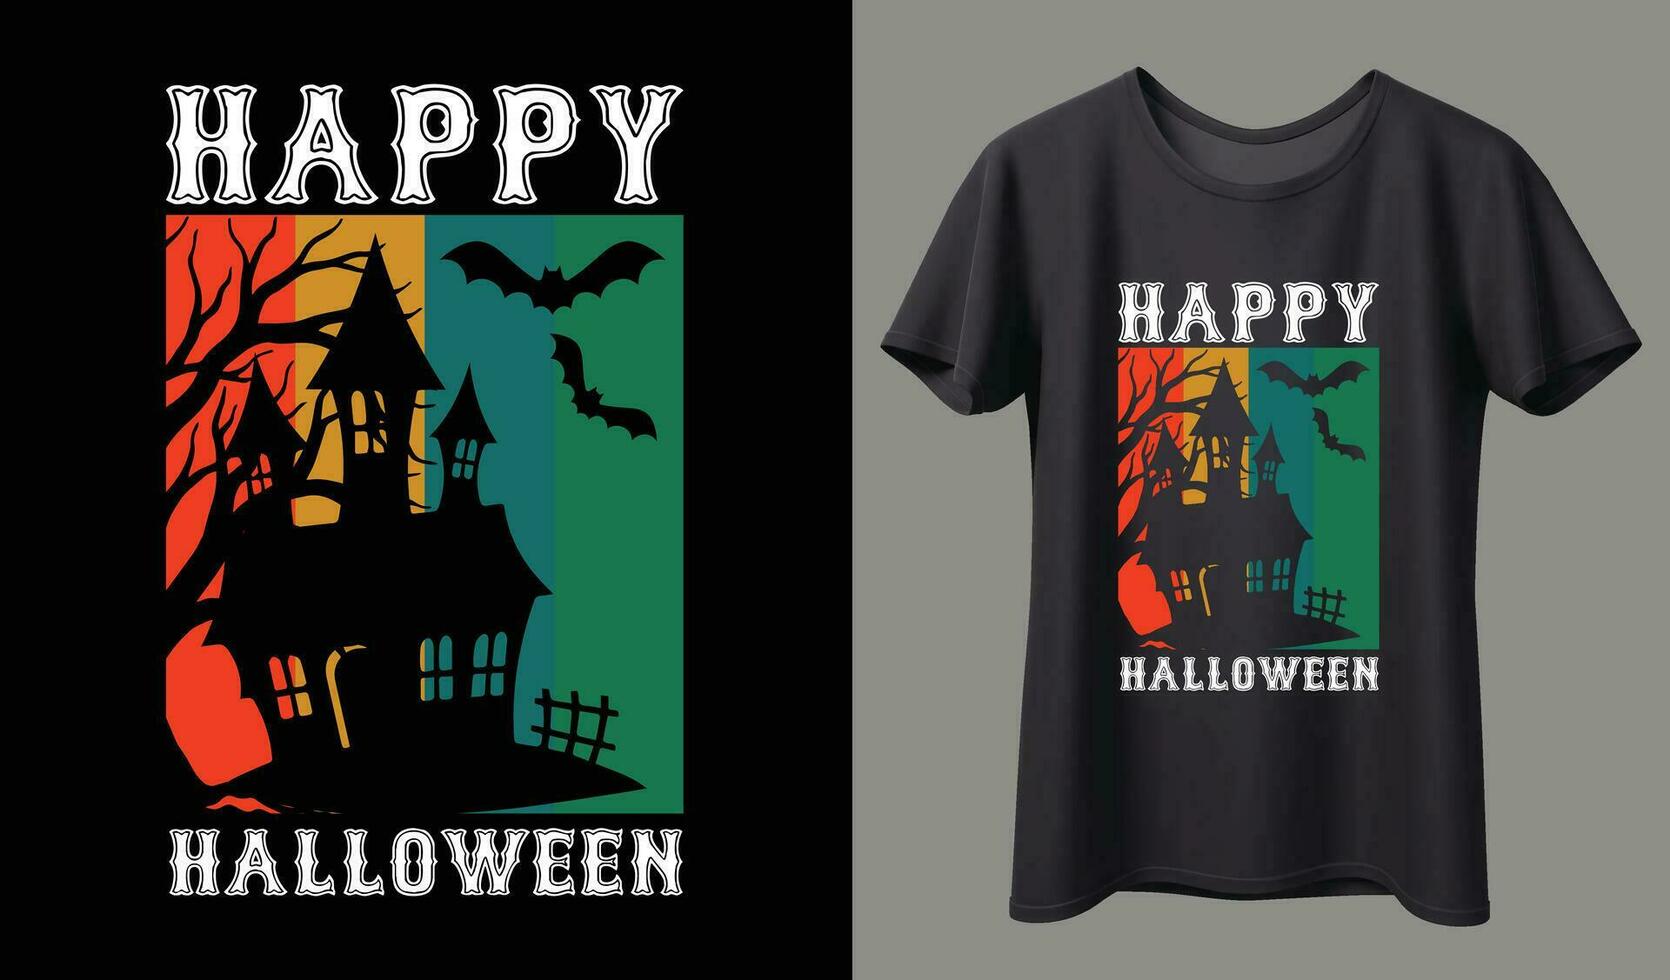 gelukkig halloween. halloween t-shirt ontwerp sjabloon. gelukkig halloween t-shirt ontwerp sjabloon gemakkelijk naar afdrukken voor alle doeleinden voor Mens, Dames, en kinderen vector